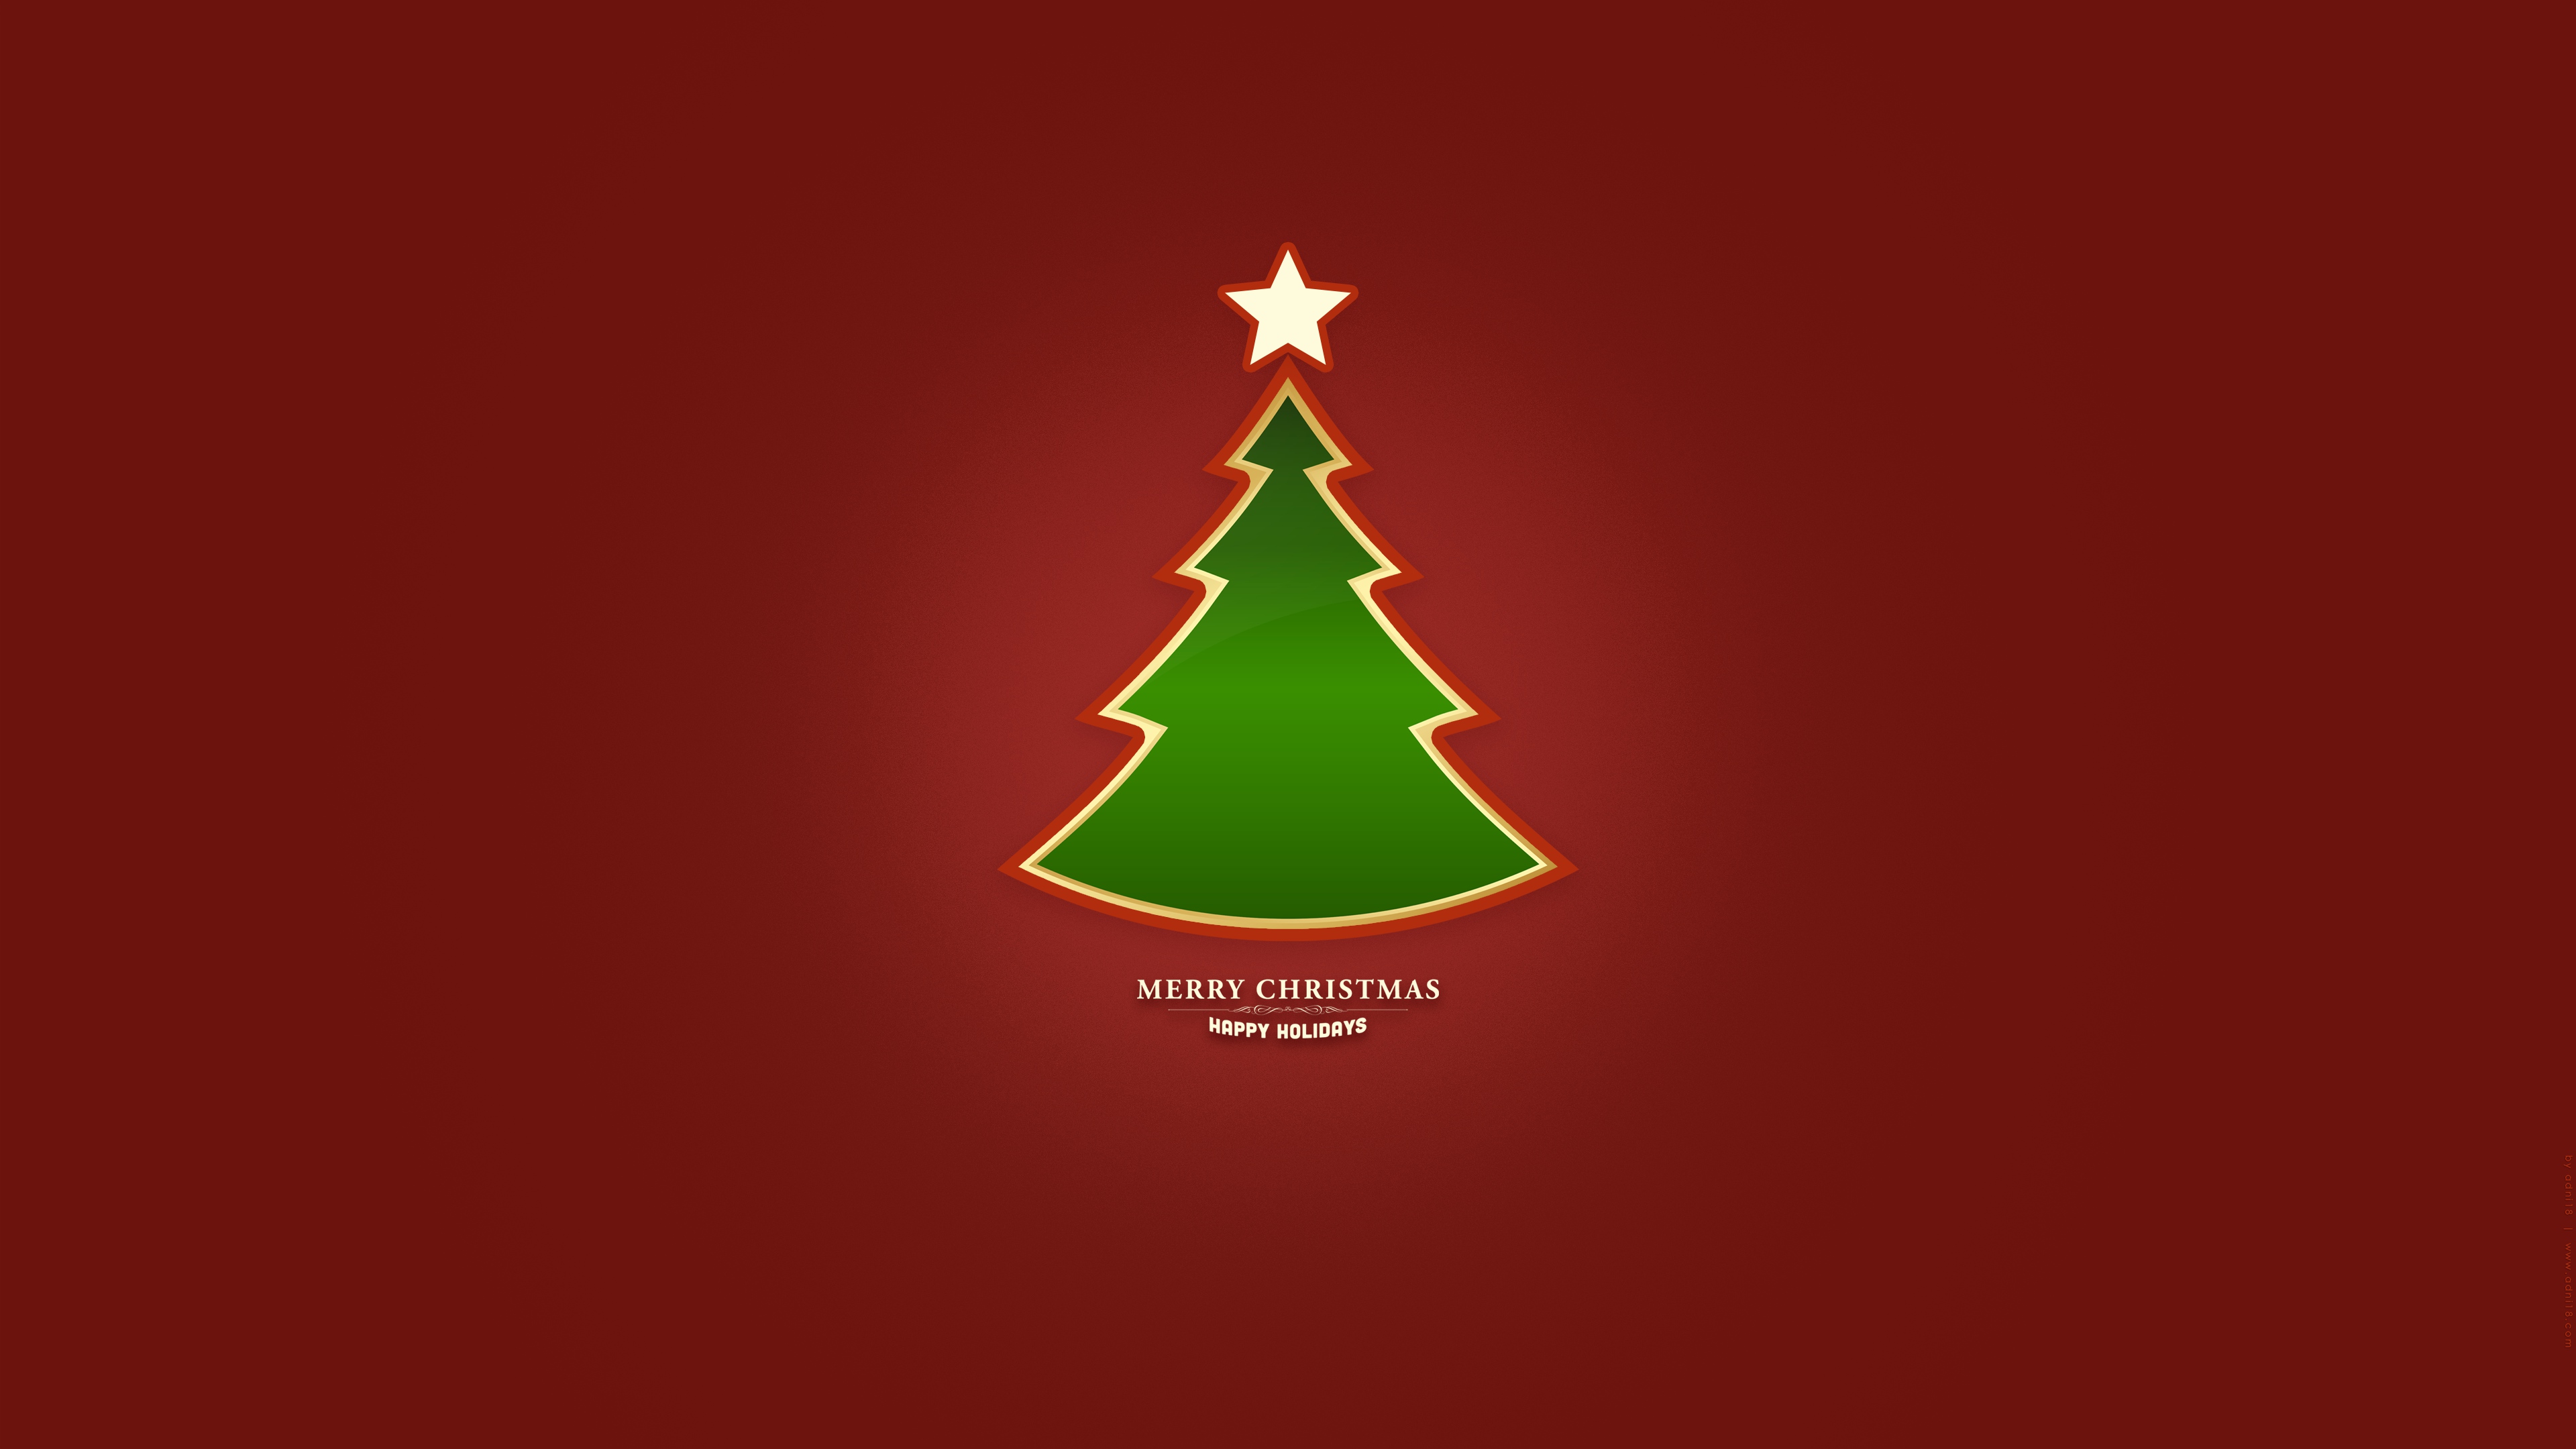 CHRISTMAS TREE_RED  - UHD